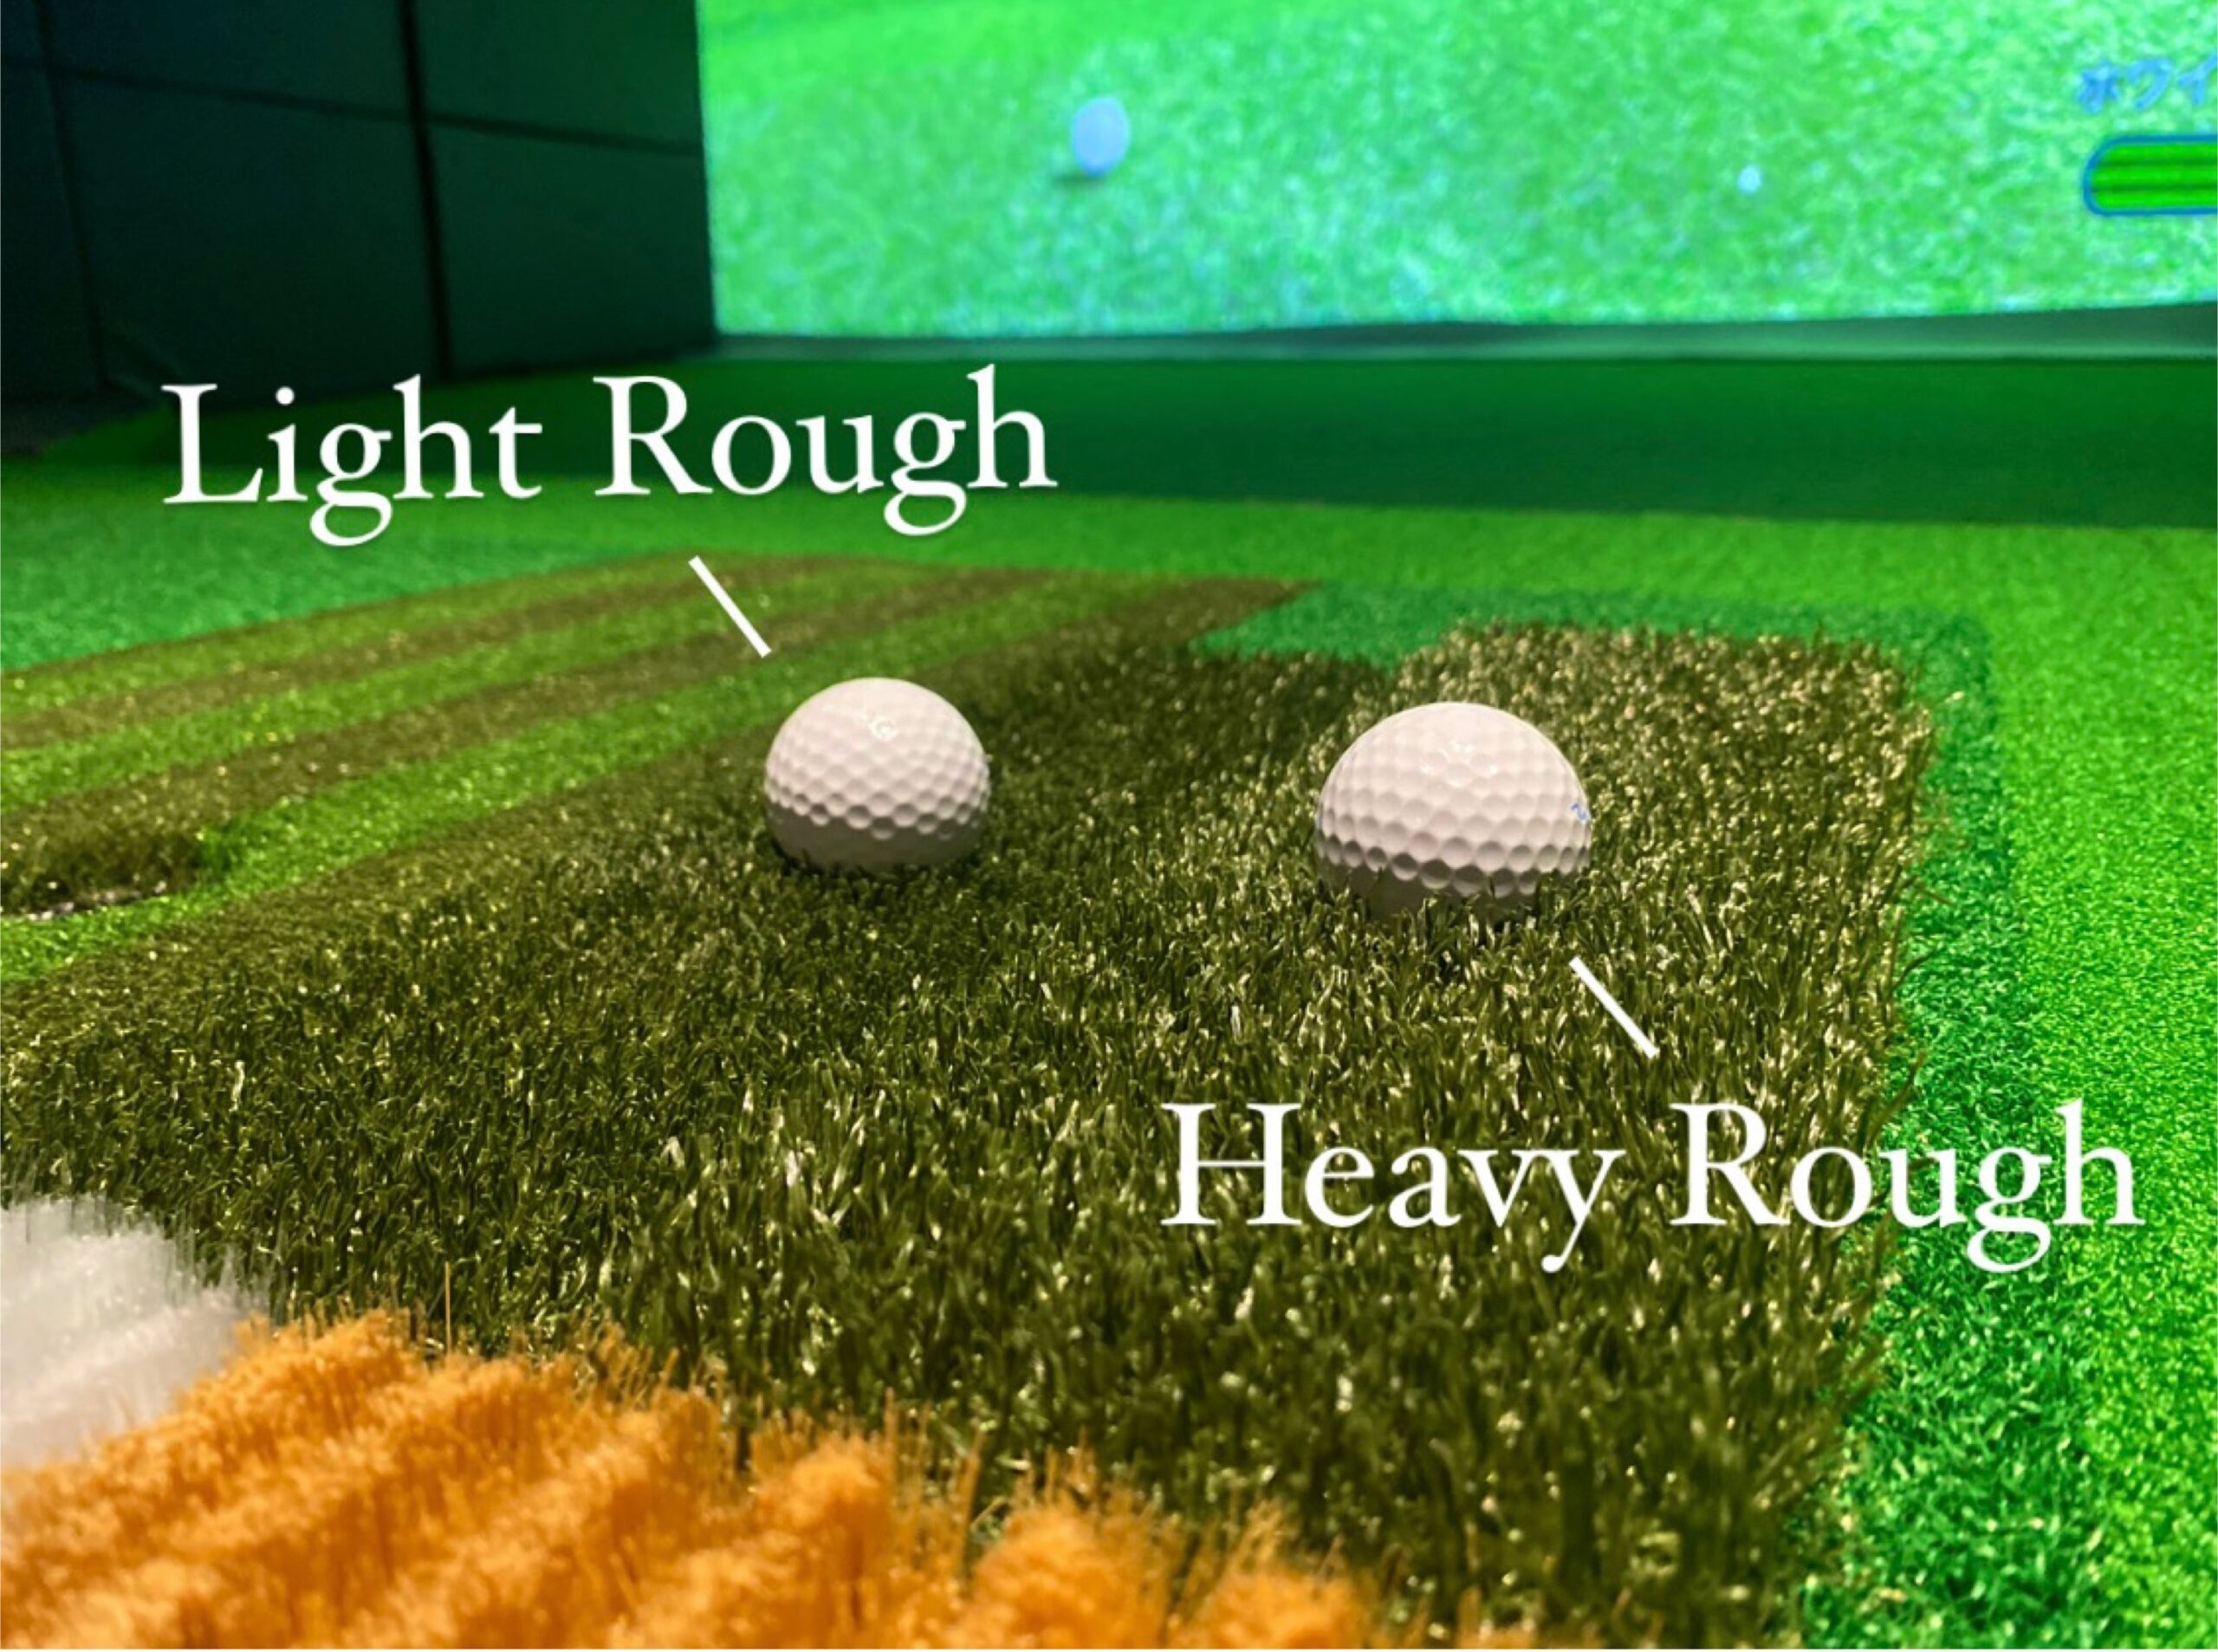 シミュレーションゴルフのライトラフとヘビーラフ